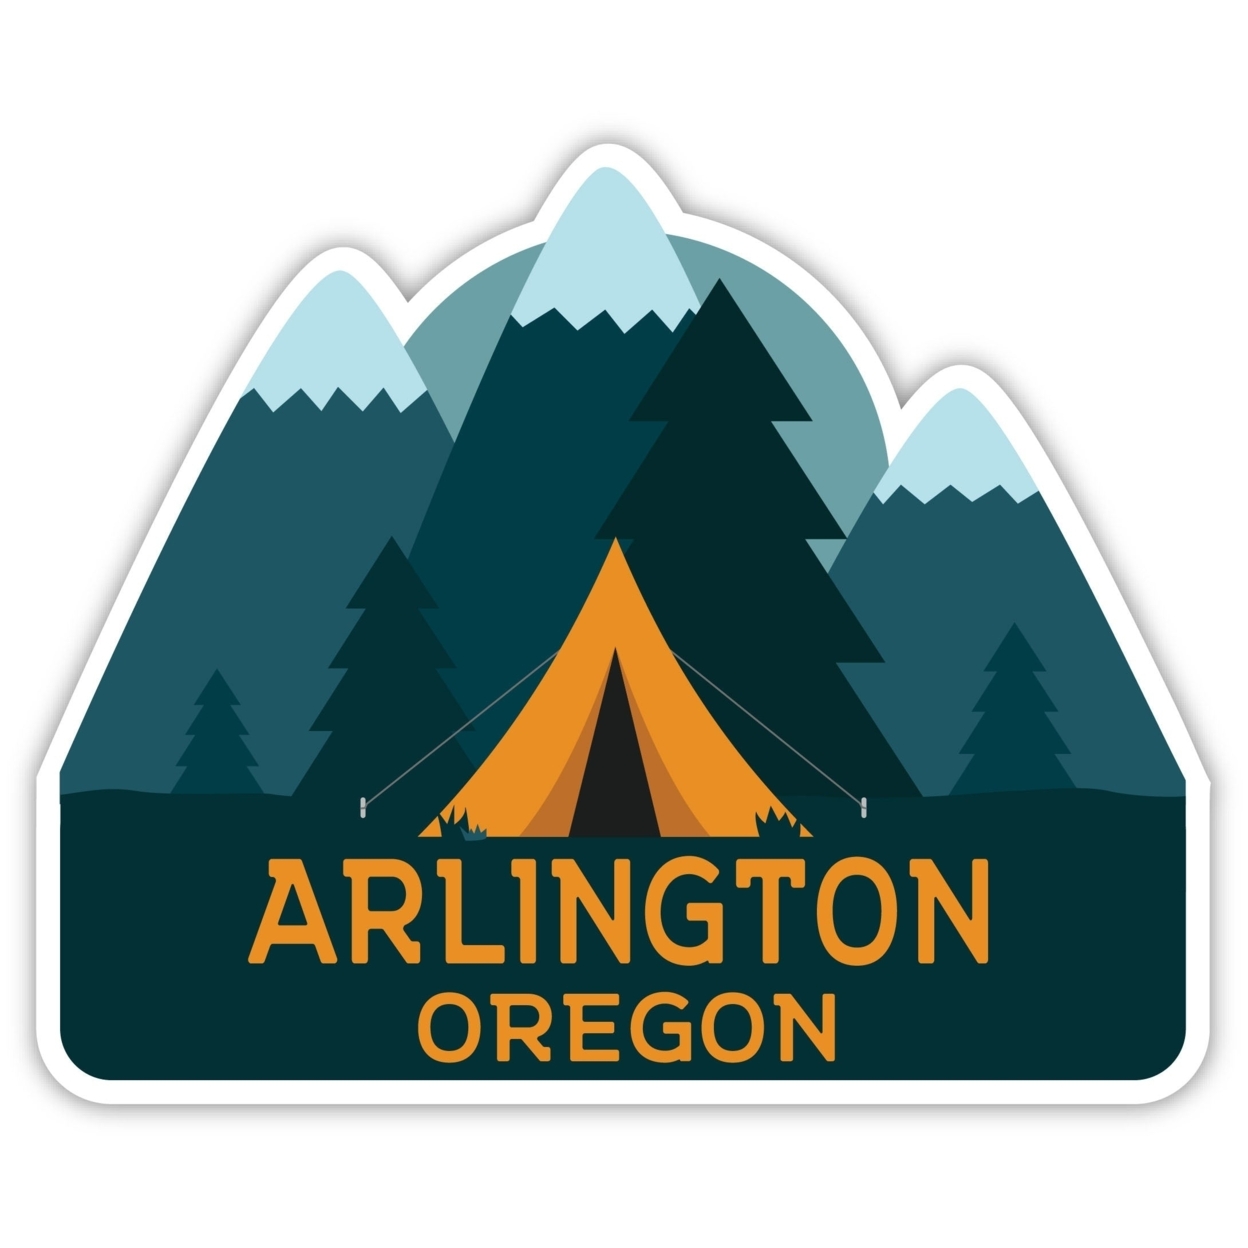 Arlington Oregon Souvenir Decorative Stickers (Choose Theme And Size) - Single Unit, 12-Inch, Tent